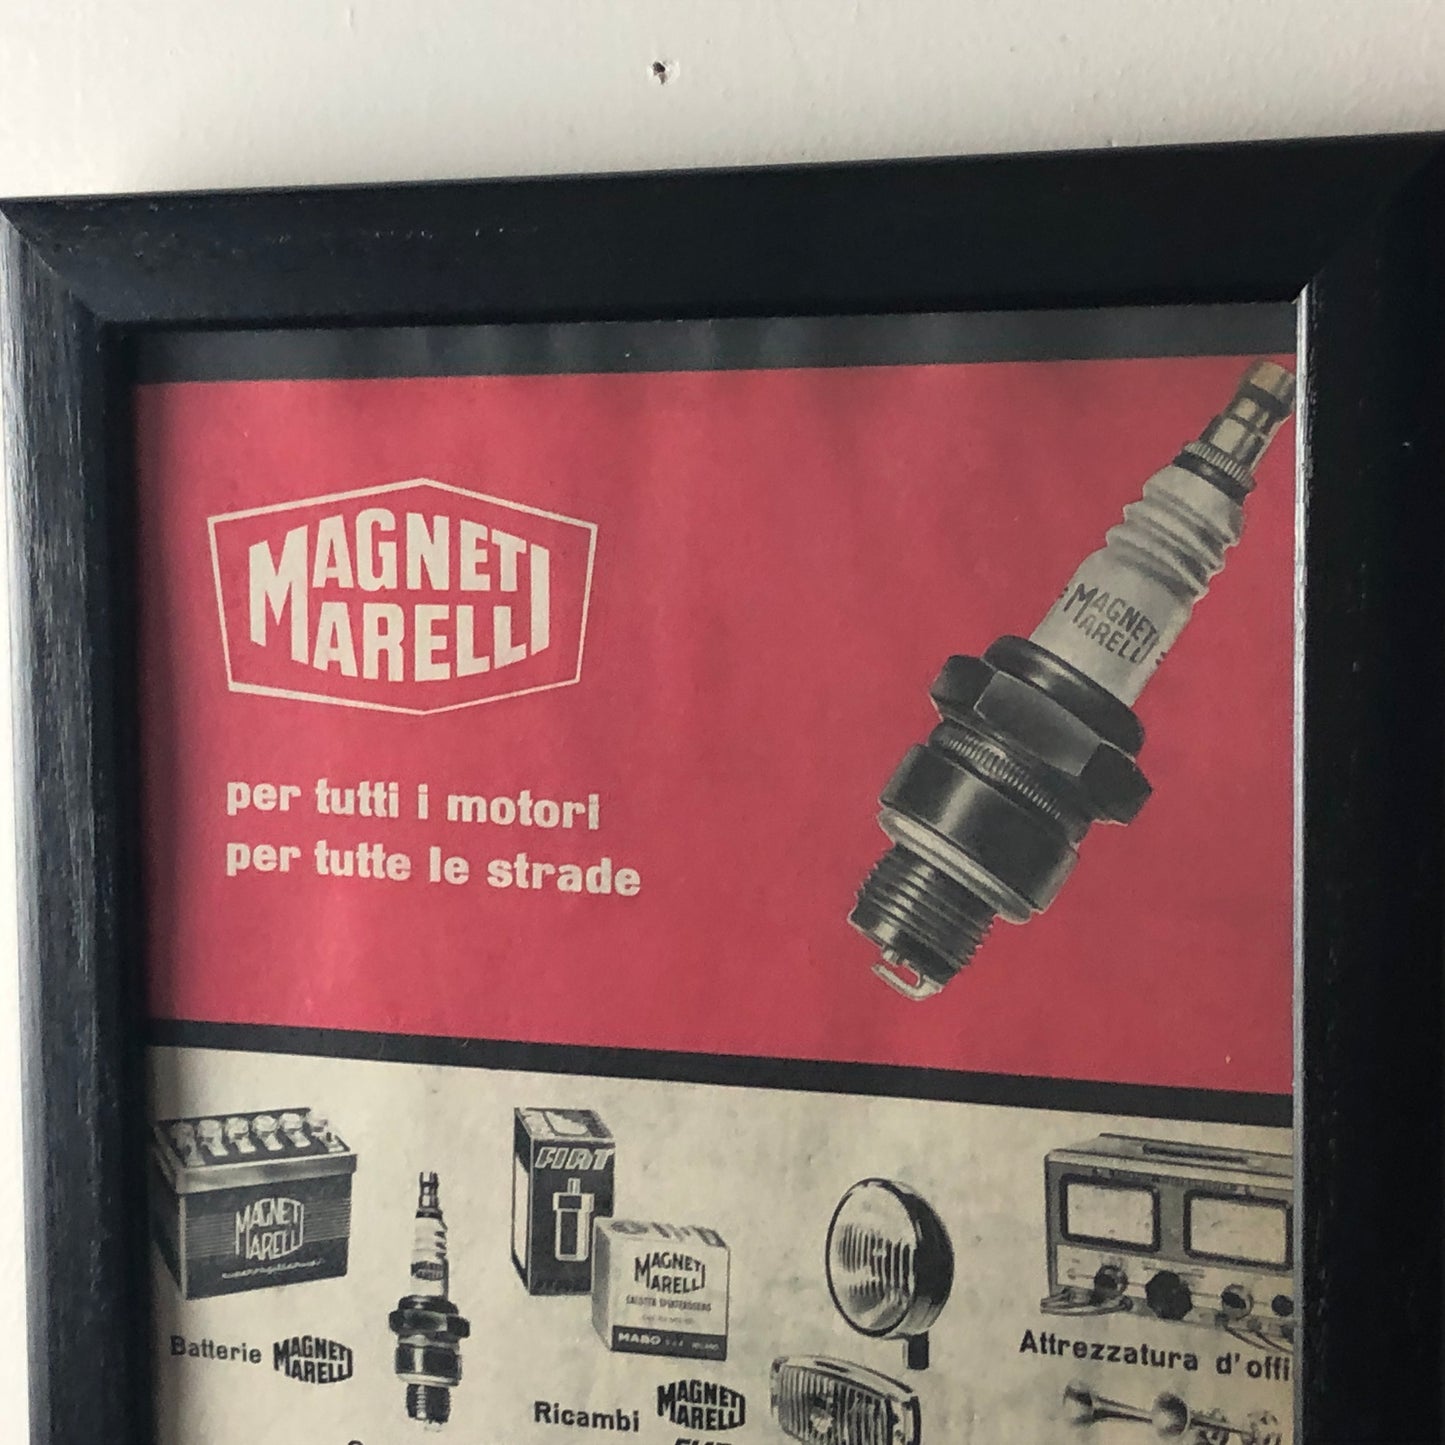 Magneti Marelli, Pubblicità Anno 1960 Magneti Marelli Per Tutti i Motori Per Tutte le Strade